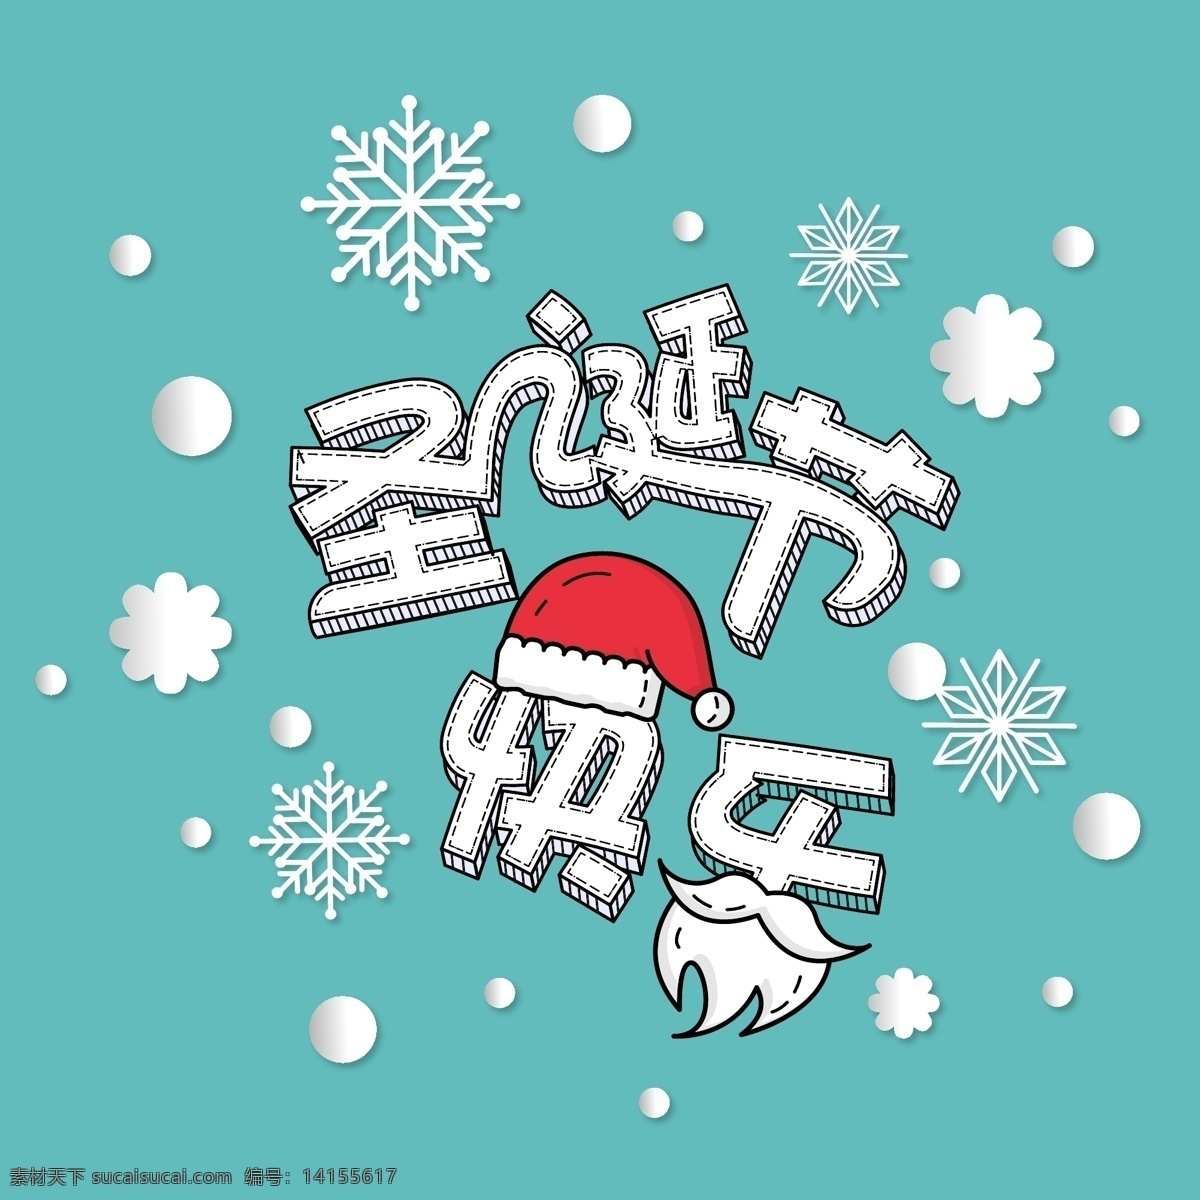 圣诞节 冷 色系 卡通 手绘 平面 海报 快乐 可爱 节日庆祝 手绘卡通风